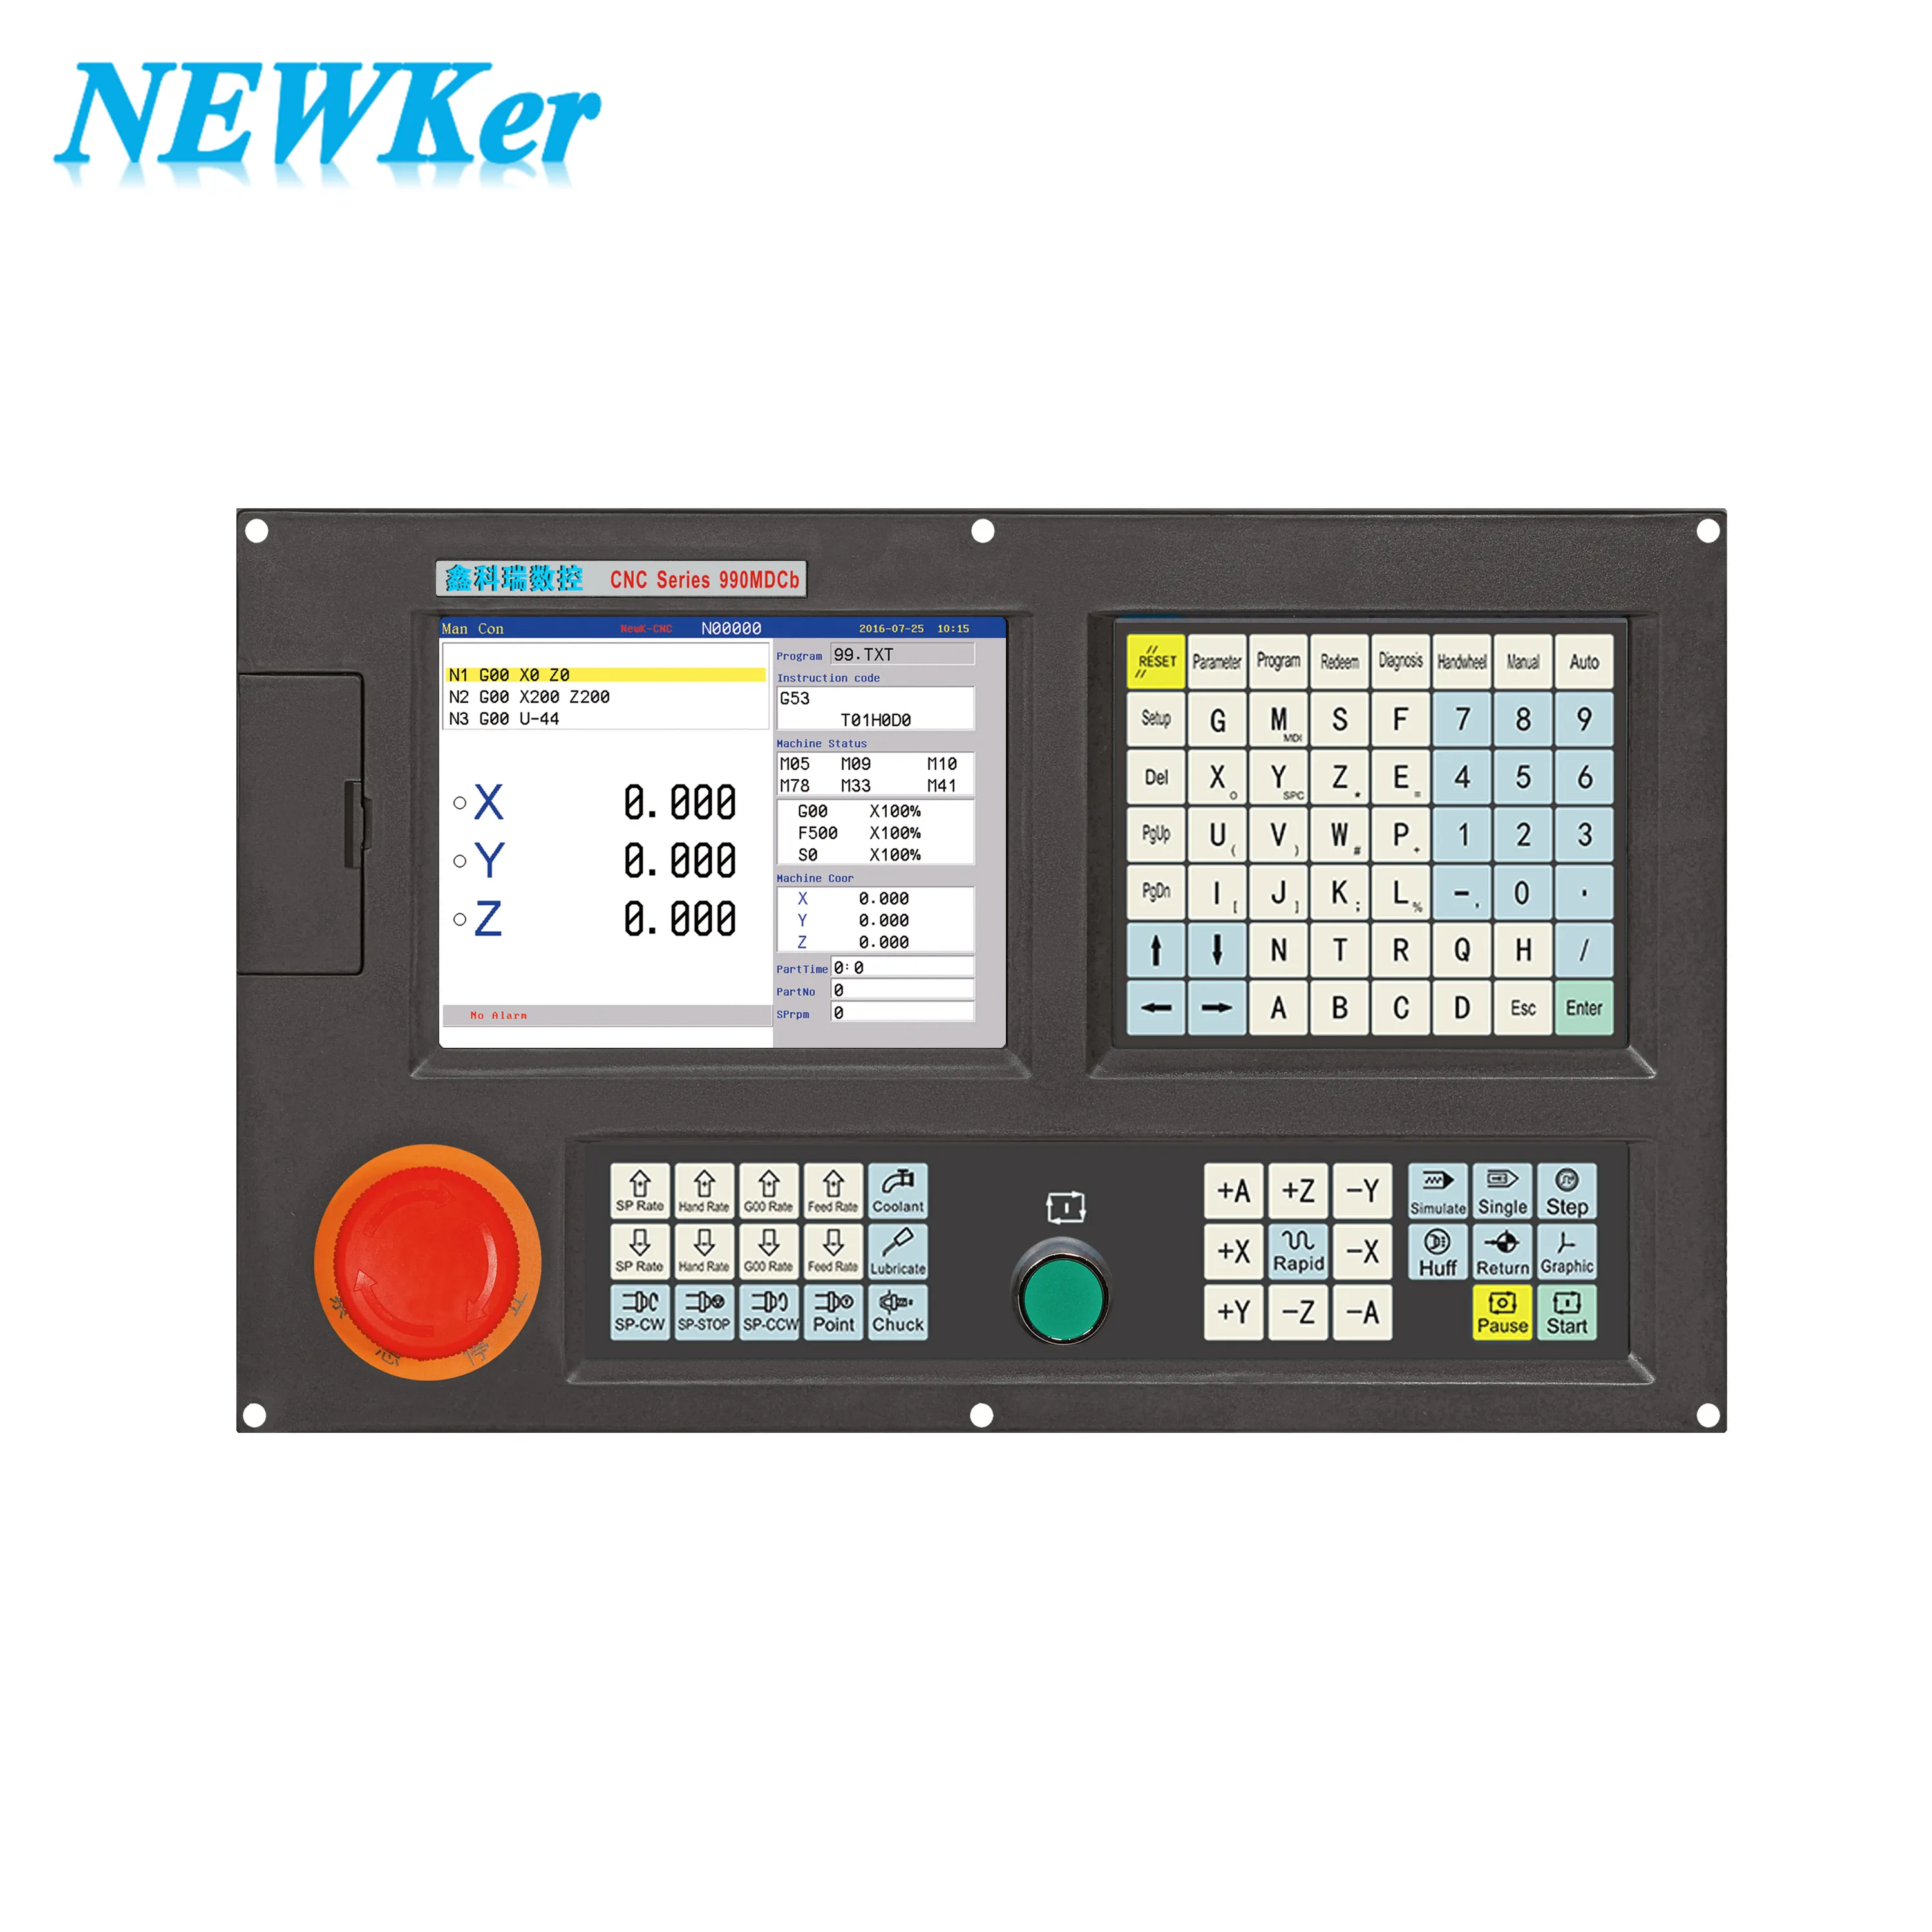 NEWKer Ad Alte Prestazioni 4 assi di fresatura e foratura fresatura sistema di cnc 3 assi mini cnc controller